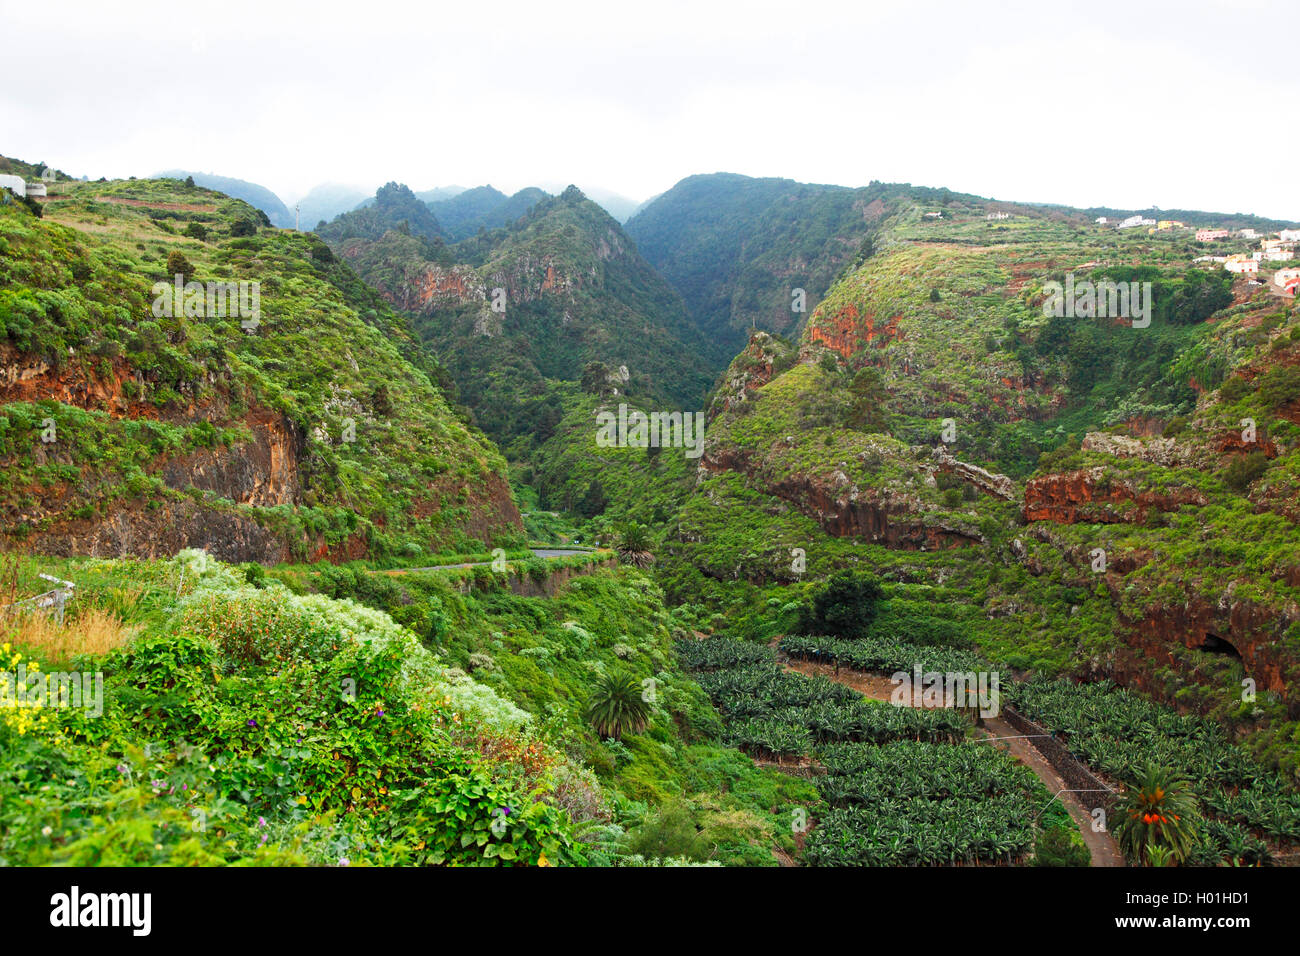 Forêt de lauriers dans les montagnes près de la Galga, Canaries, La Palma Banque D'Images